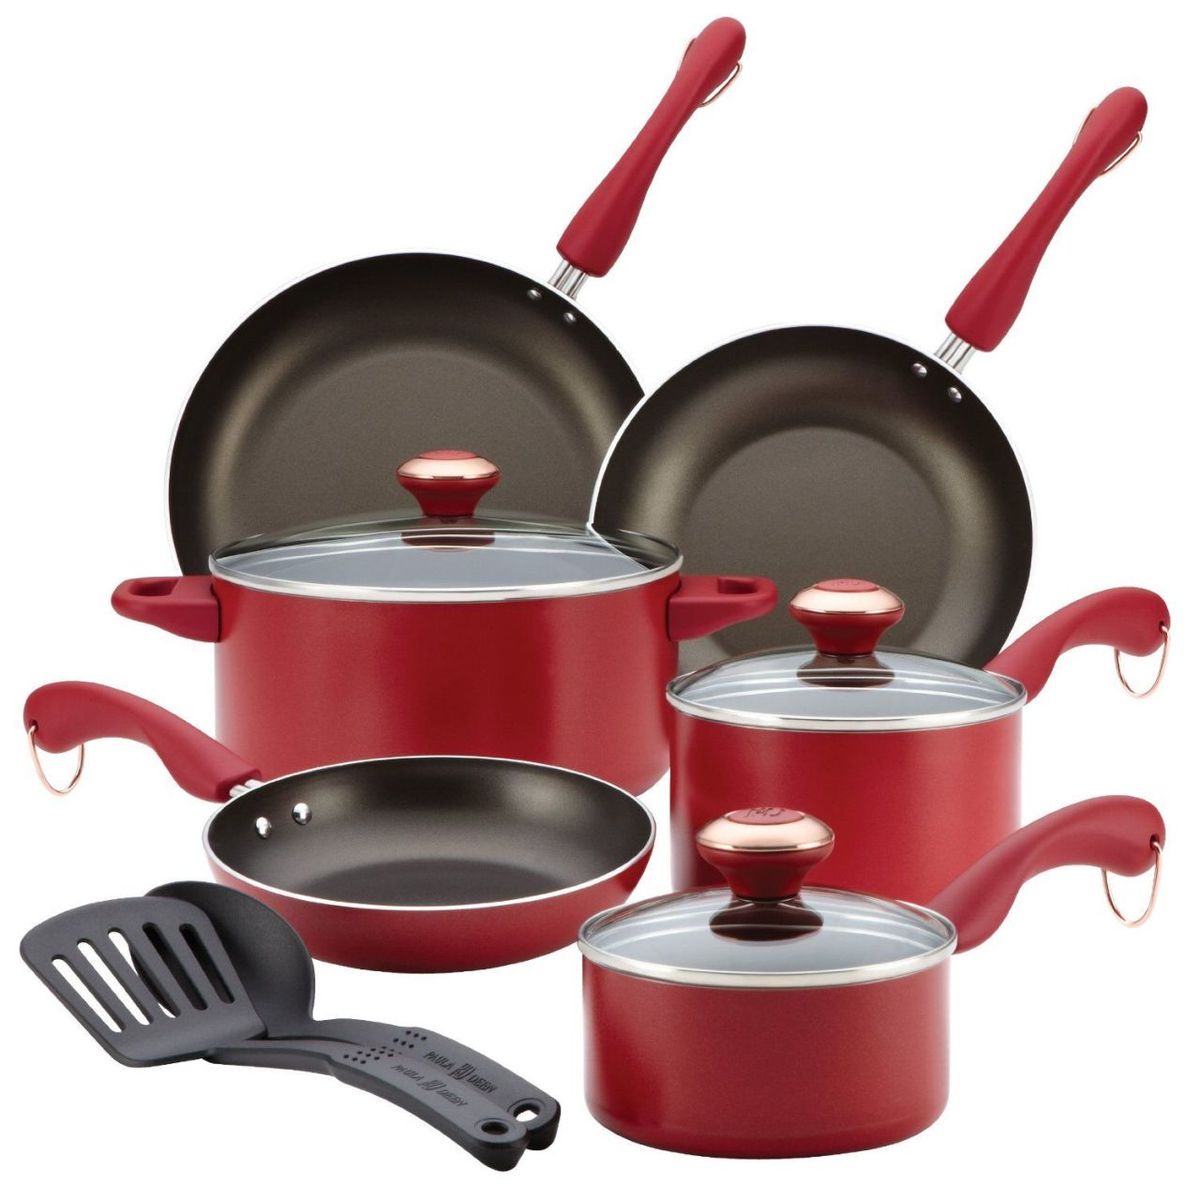 Paula Deen 11-pc. Red Cookware Set $52.97 (Reg. $160) + Free Shipping!  {After Rebate}